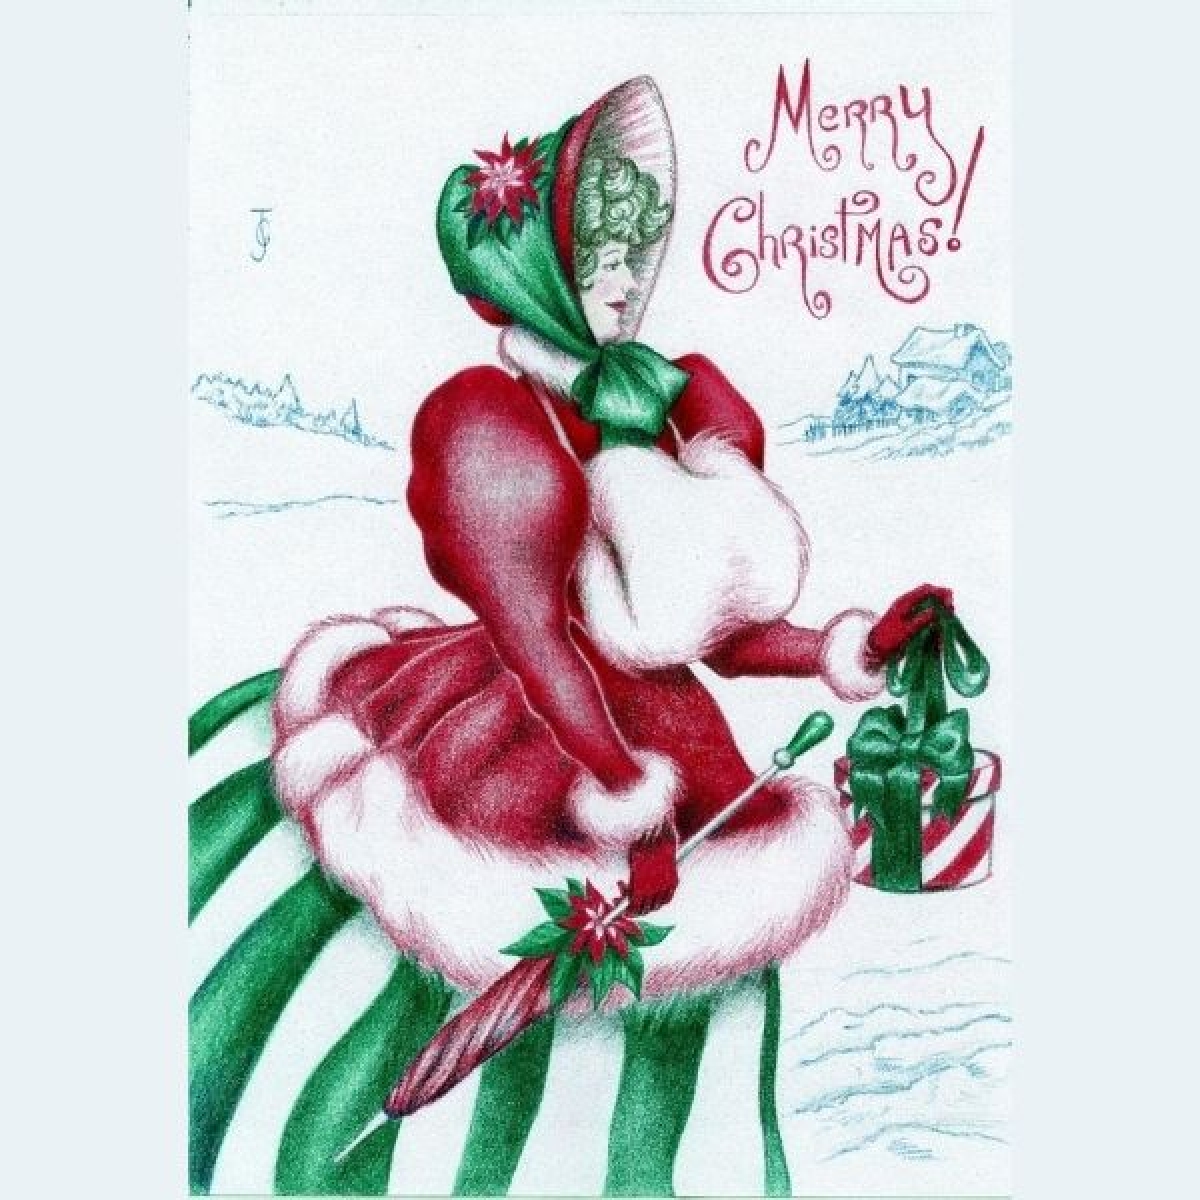 Send a Christmas e-Card designed by Christine eCards